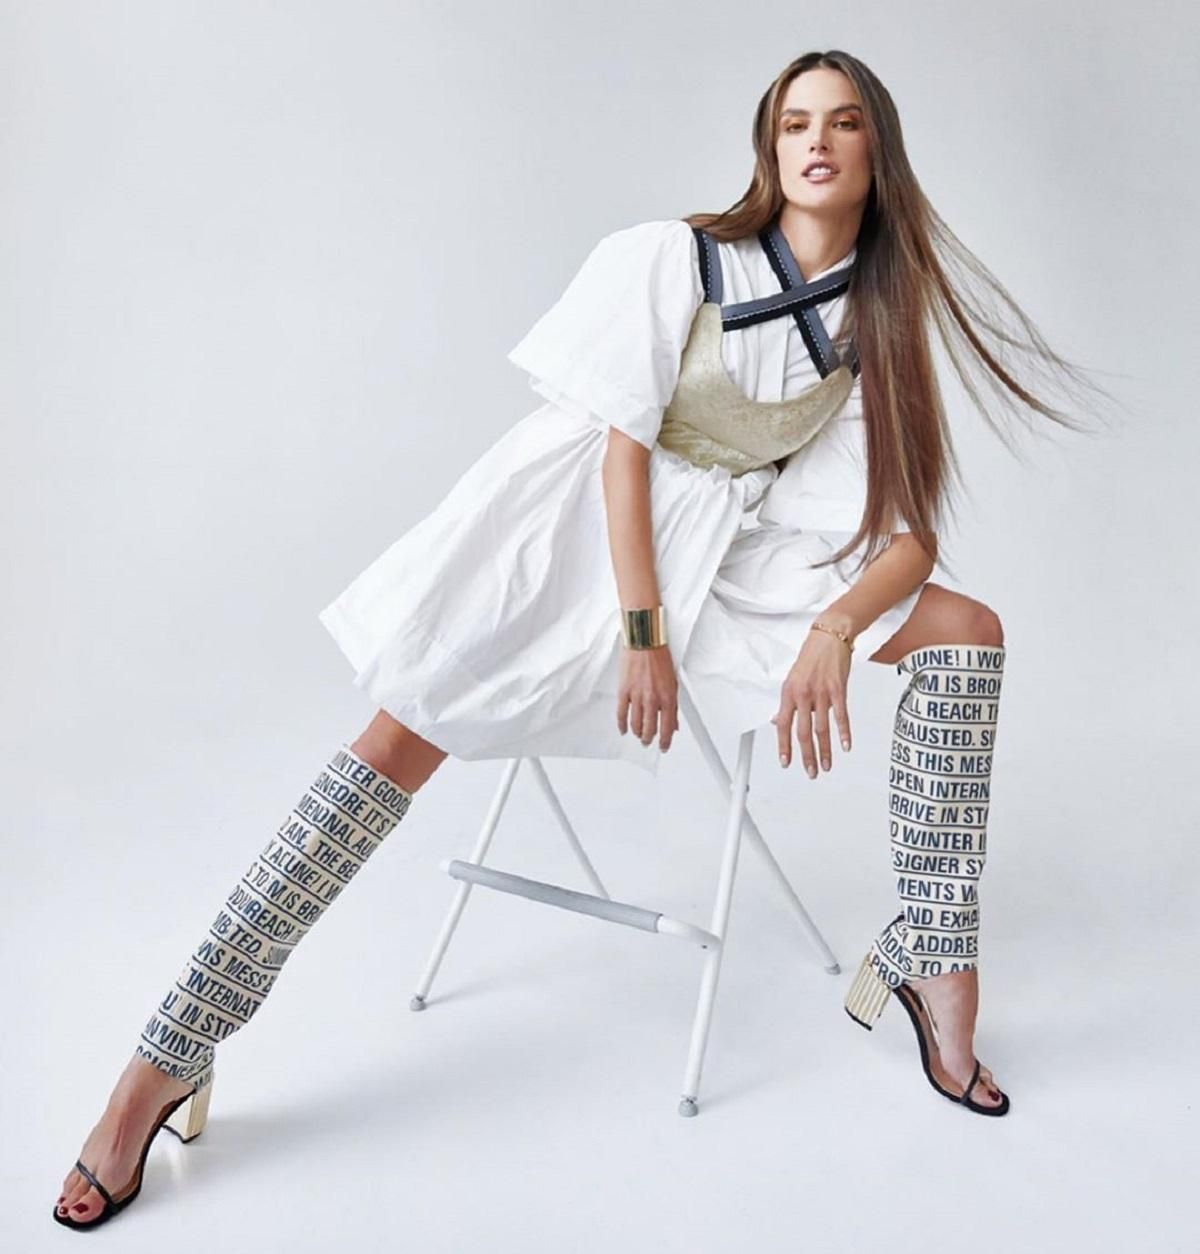 Добавить цвета: Алессандра Амбросио стала звездой Harper's Bazaar – яркие фото